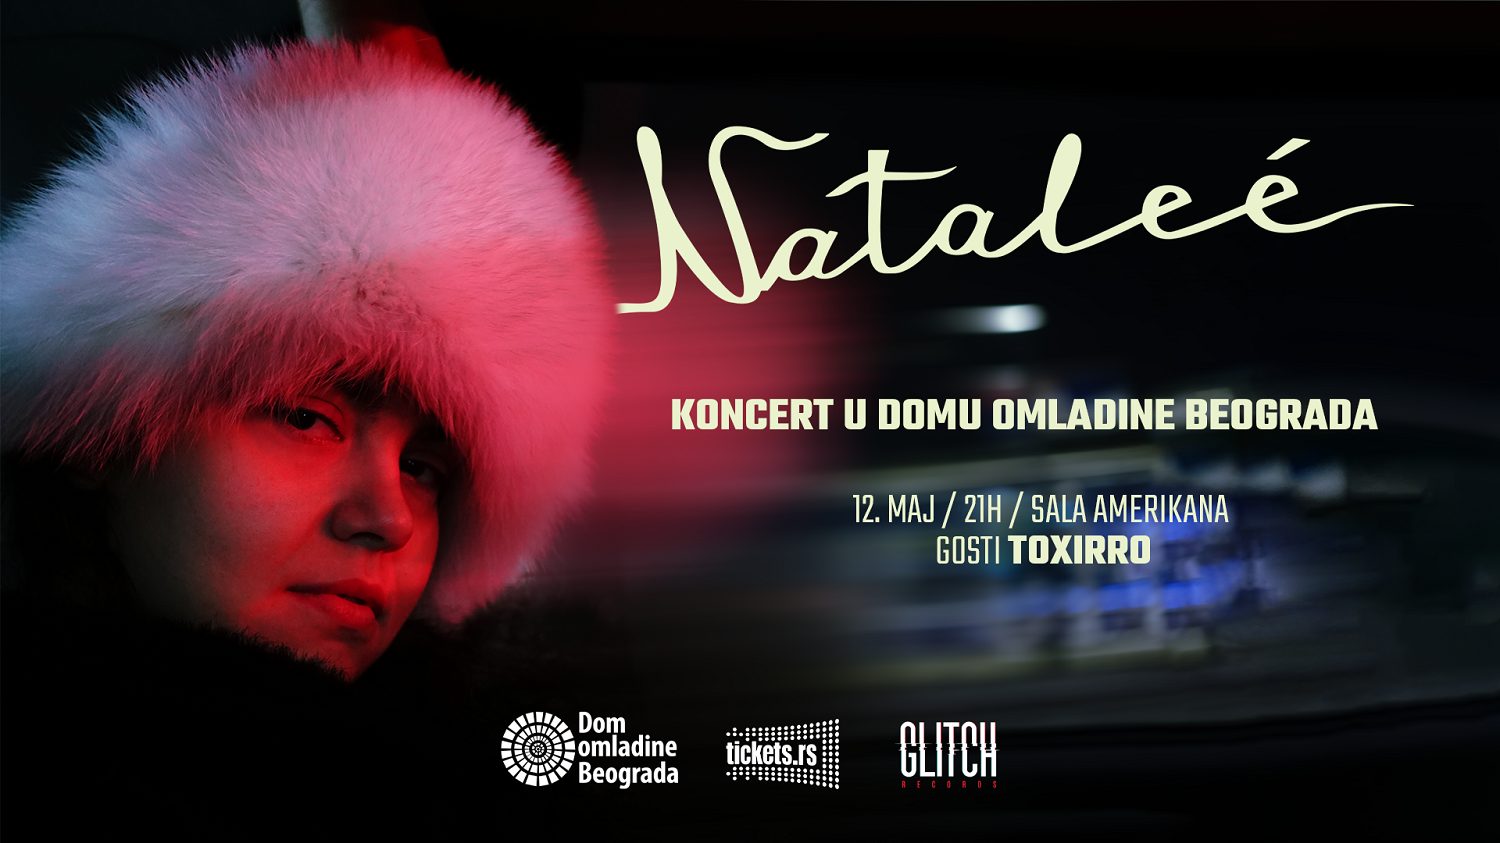 Veliki beogradski koncert benda Nataleé 12. maja u Domu omladine - ODLOŽENO ZA JUN